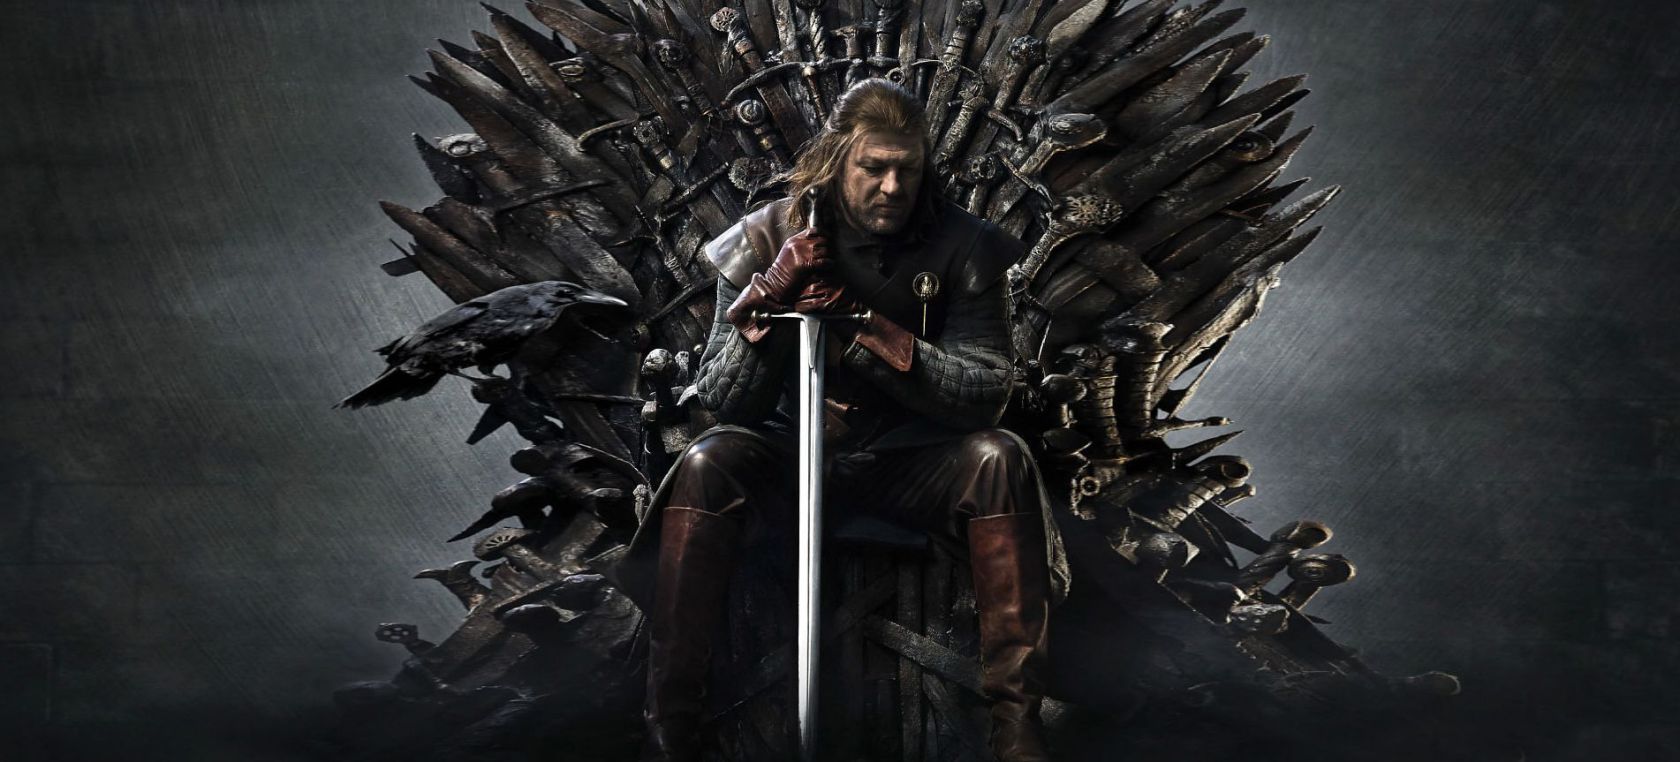 House of Dragons precuela Juego de Tronos Paddy Considine actor